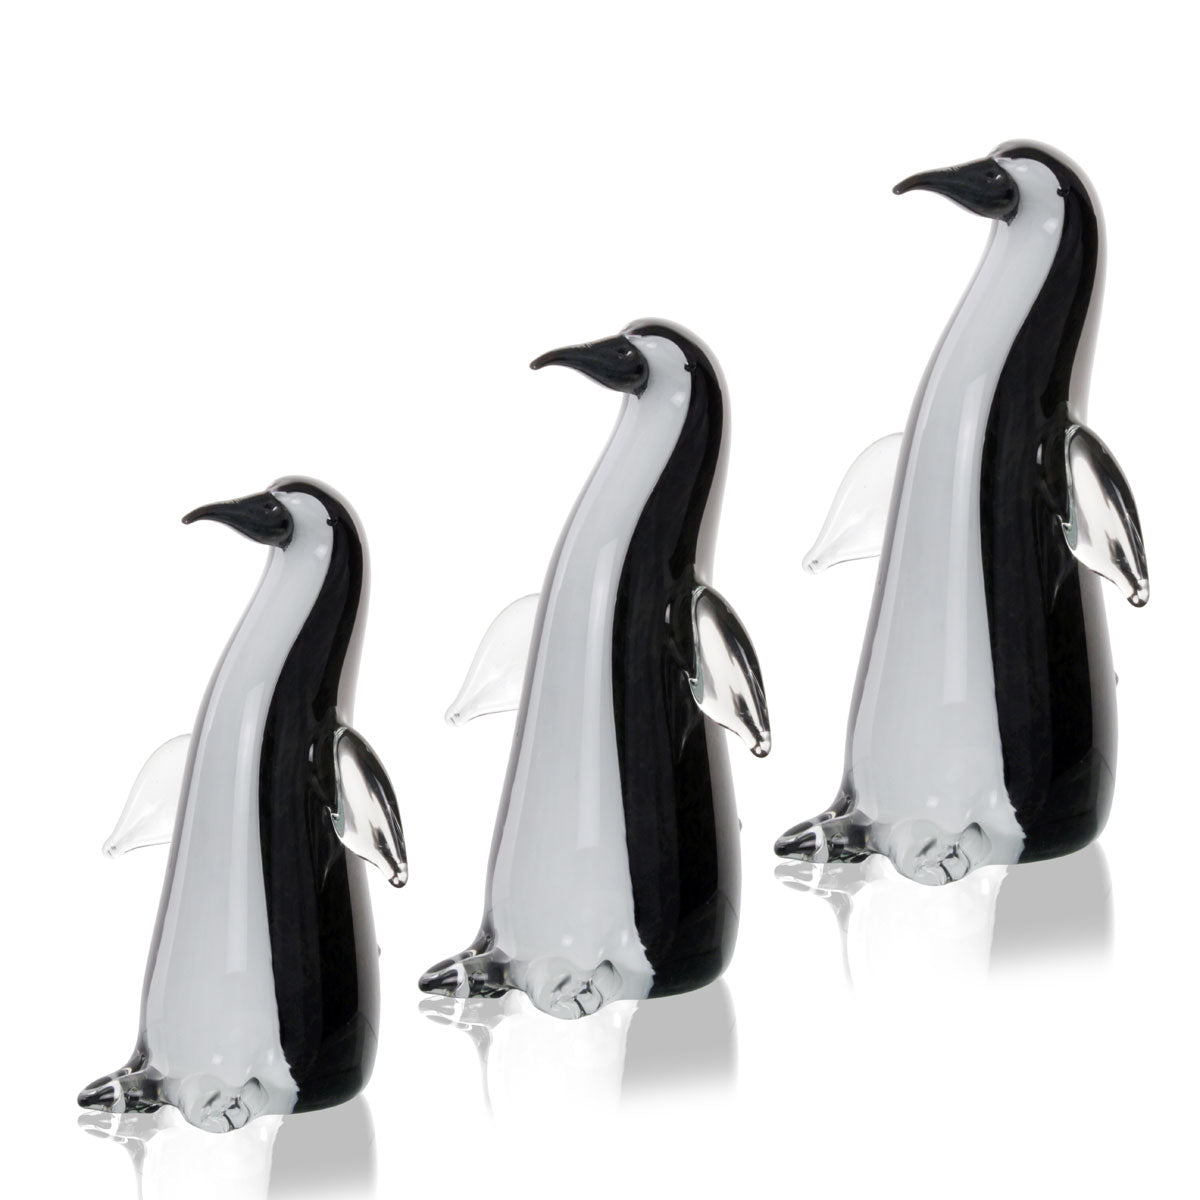 Tris pinguini bianco e nero dalla manifattura artigianale in vetro colorato